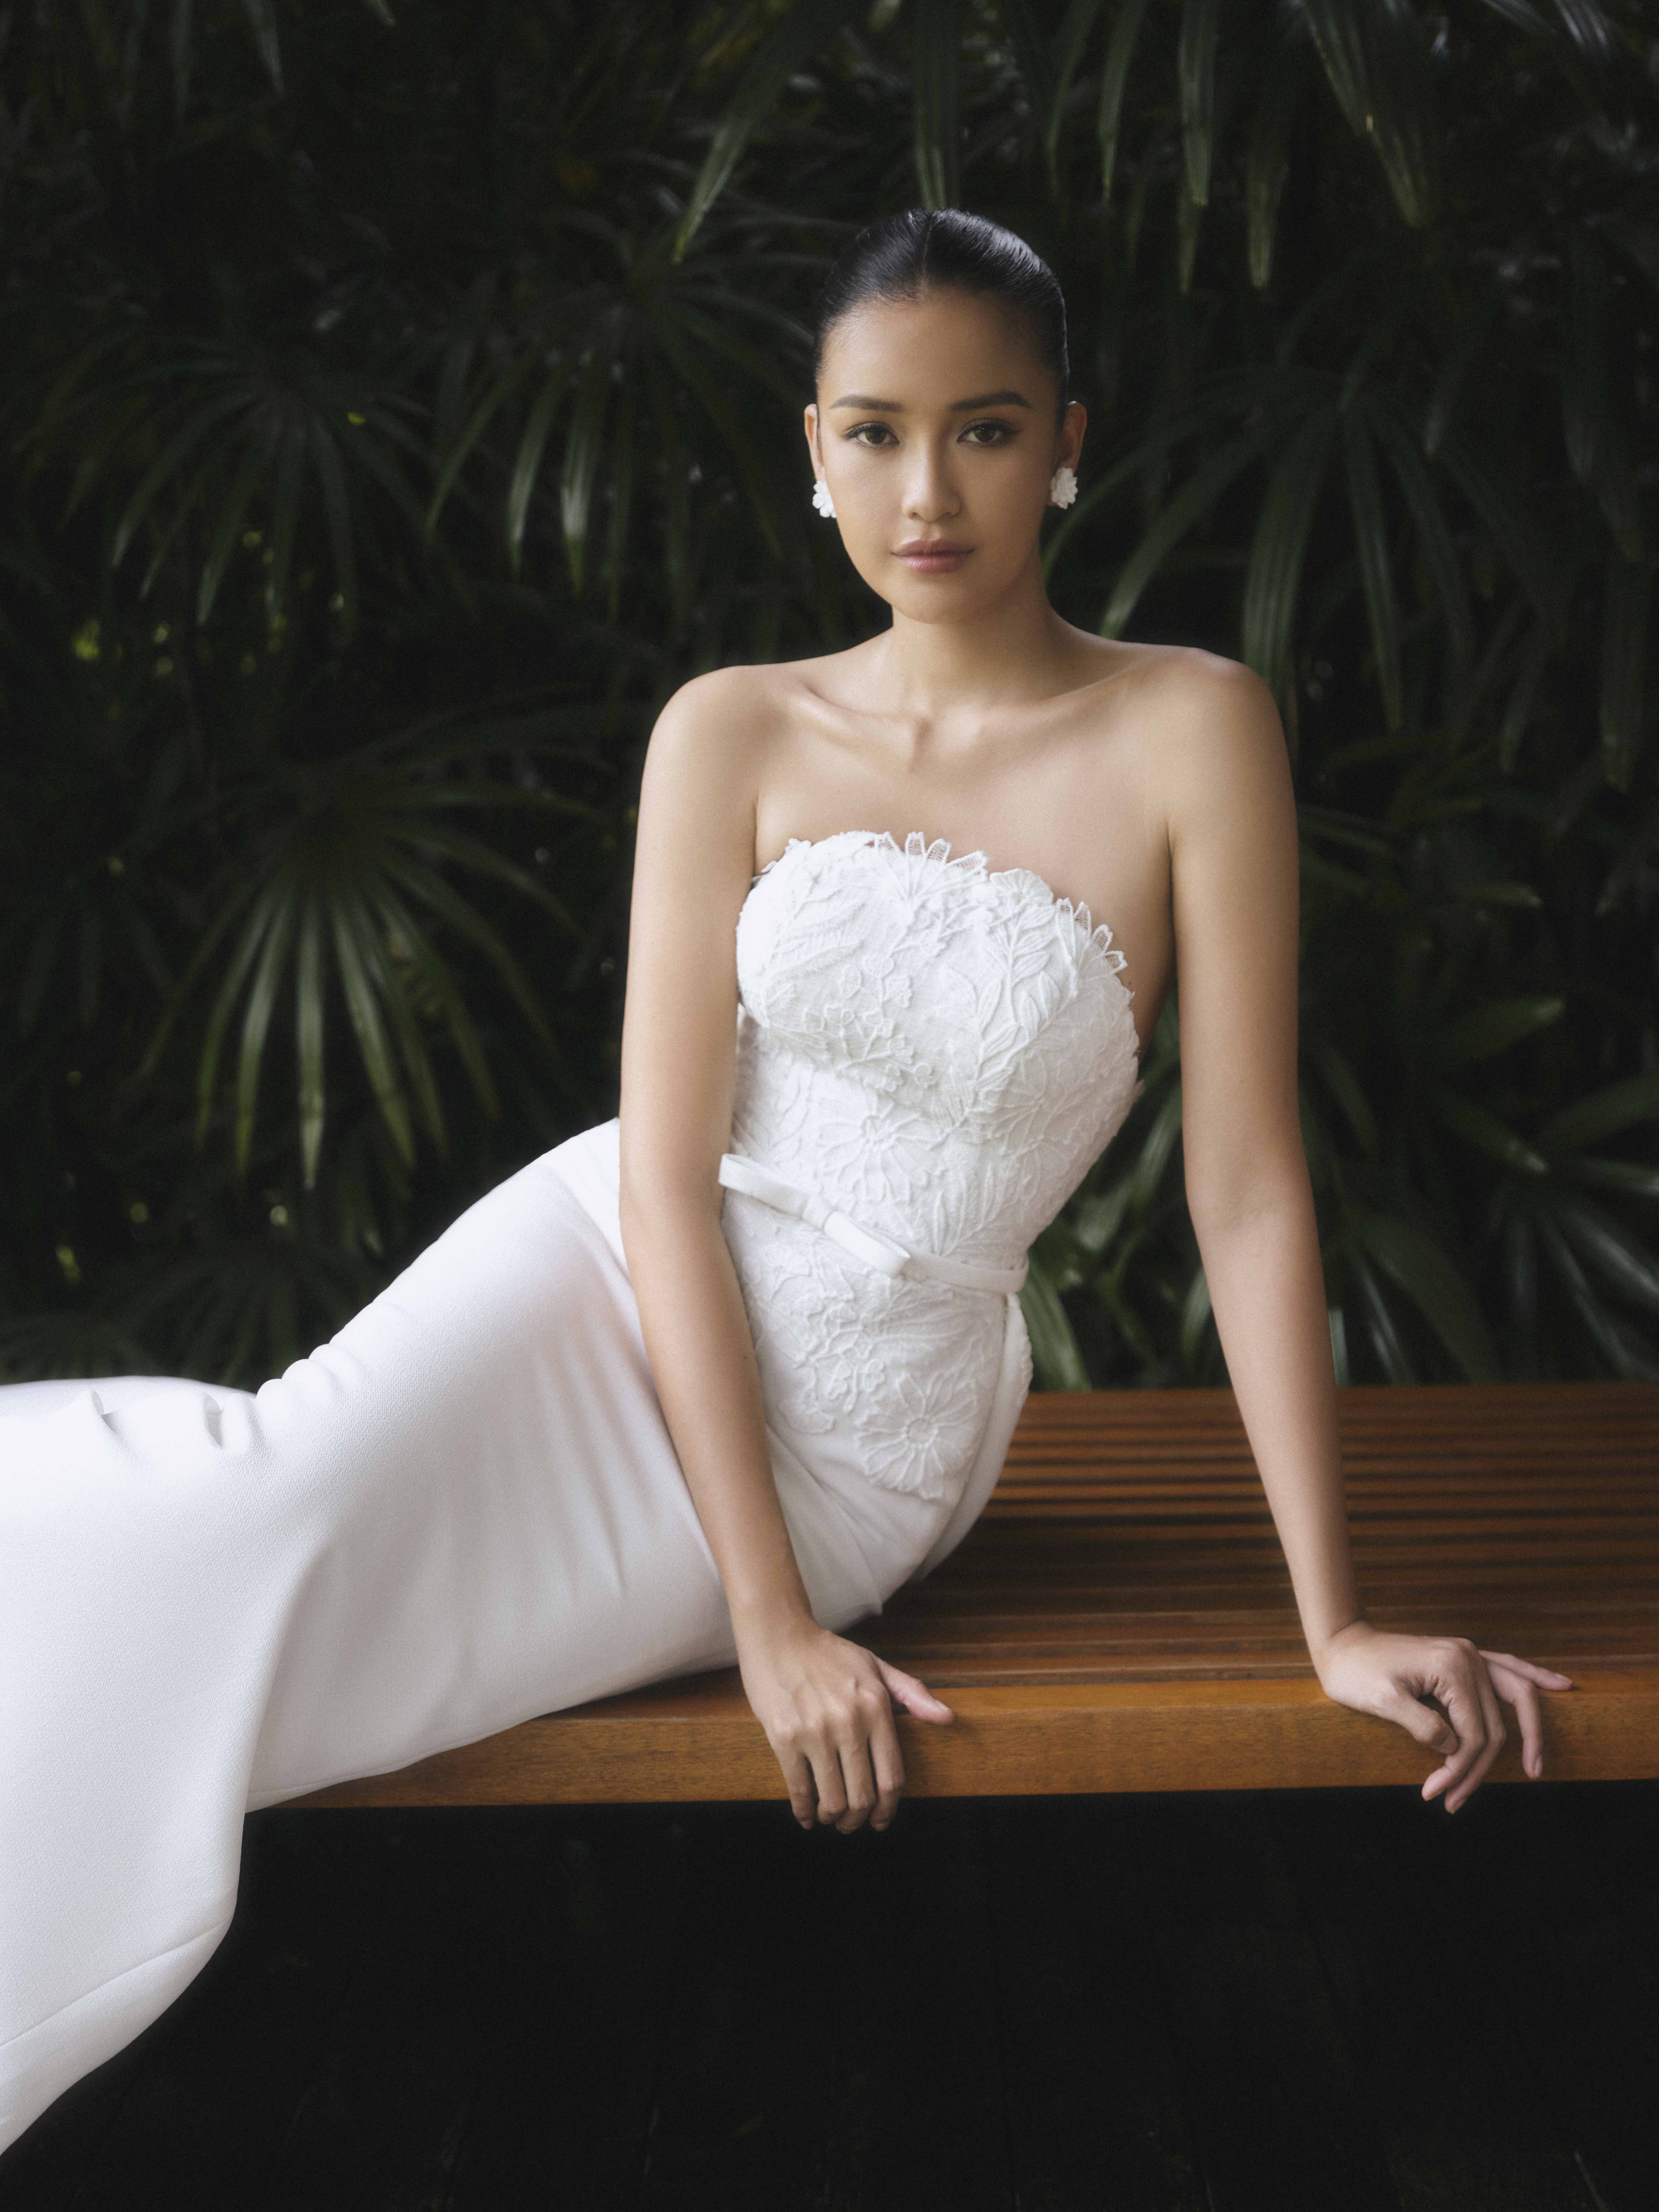 Hoa hậu Ngọc Châu quyến rũ khi mặc váy cưới